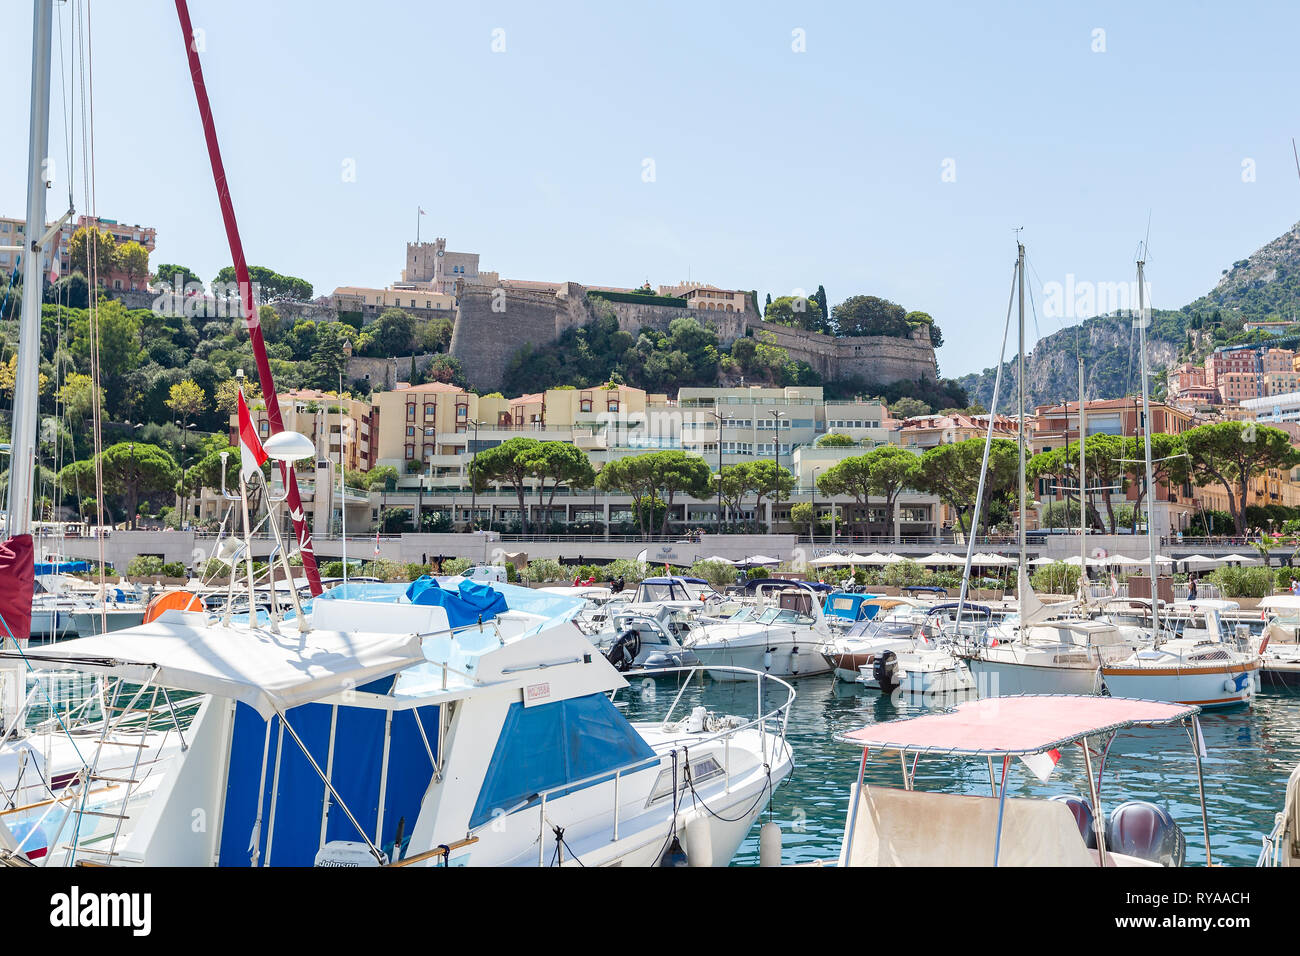 Blick vom Hafen auf den Fuerstenpalast in Monte Carlo, Monaco, 29.08.2018 Bildnachweis: Mario Hommes / HH-Photography Stock Photo